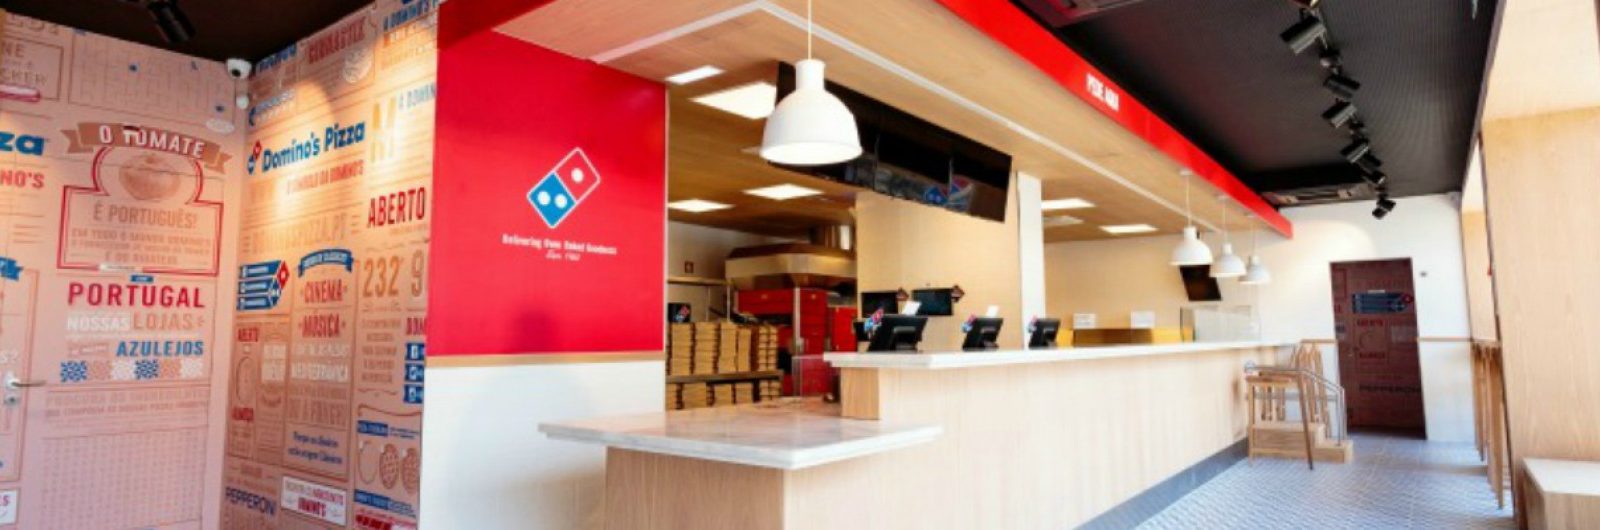 Domino's Pizza soma oito unidades em Portugal